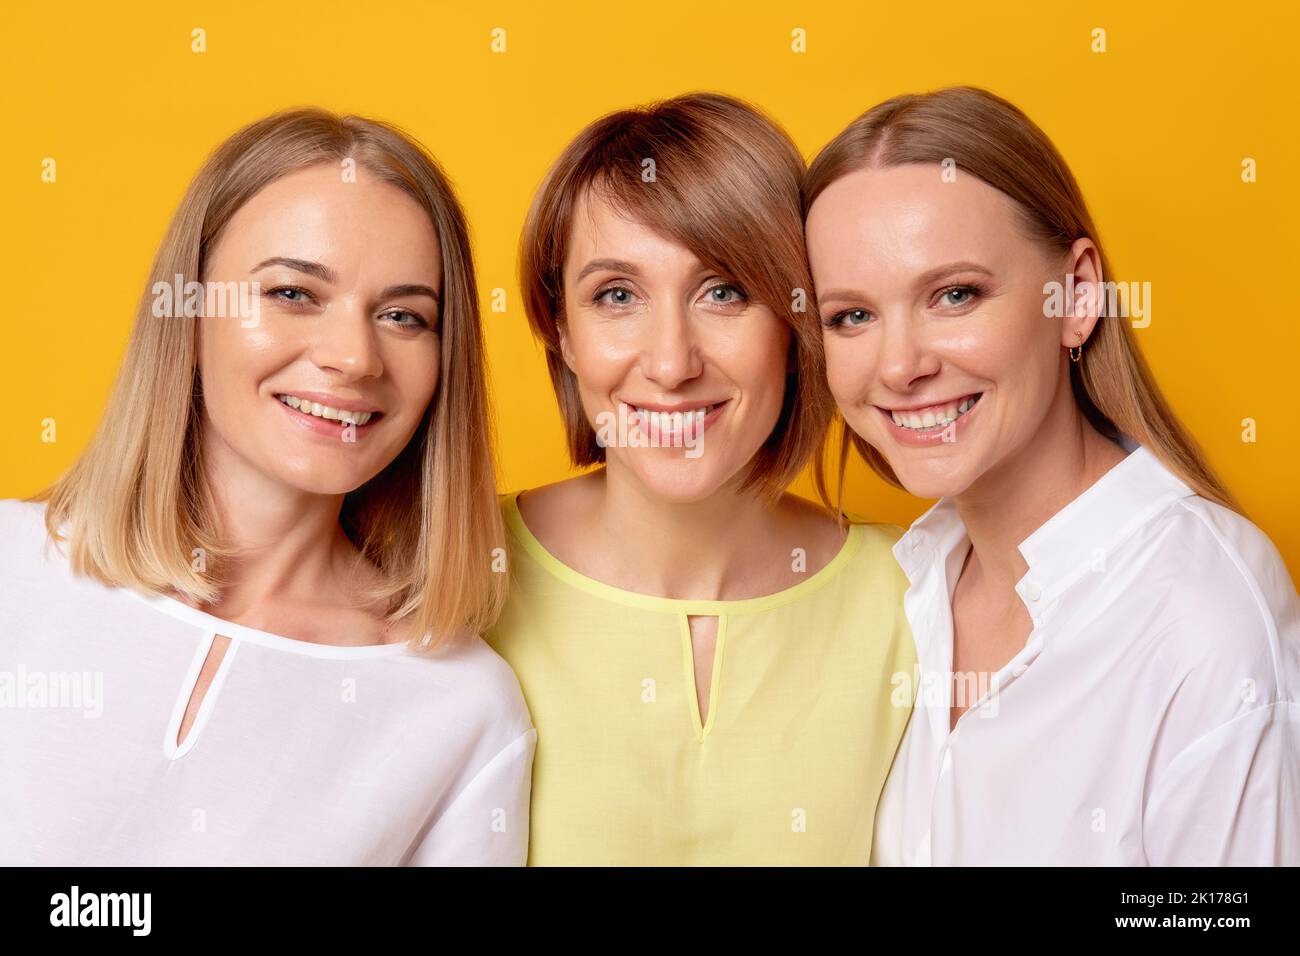 Felicità femminile. Bellezza benessere. Amore sostegno. Ritratto di tre donne positive in blusa bianca gialla insieme sorridendo isolato su sfondo arancione Foto Stock